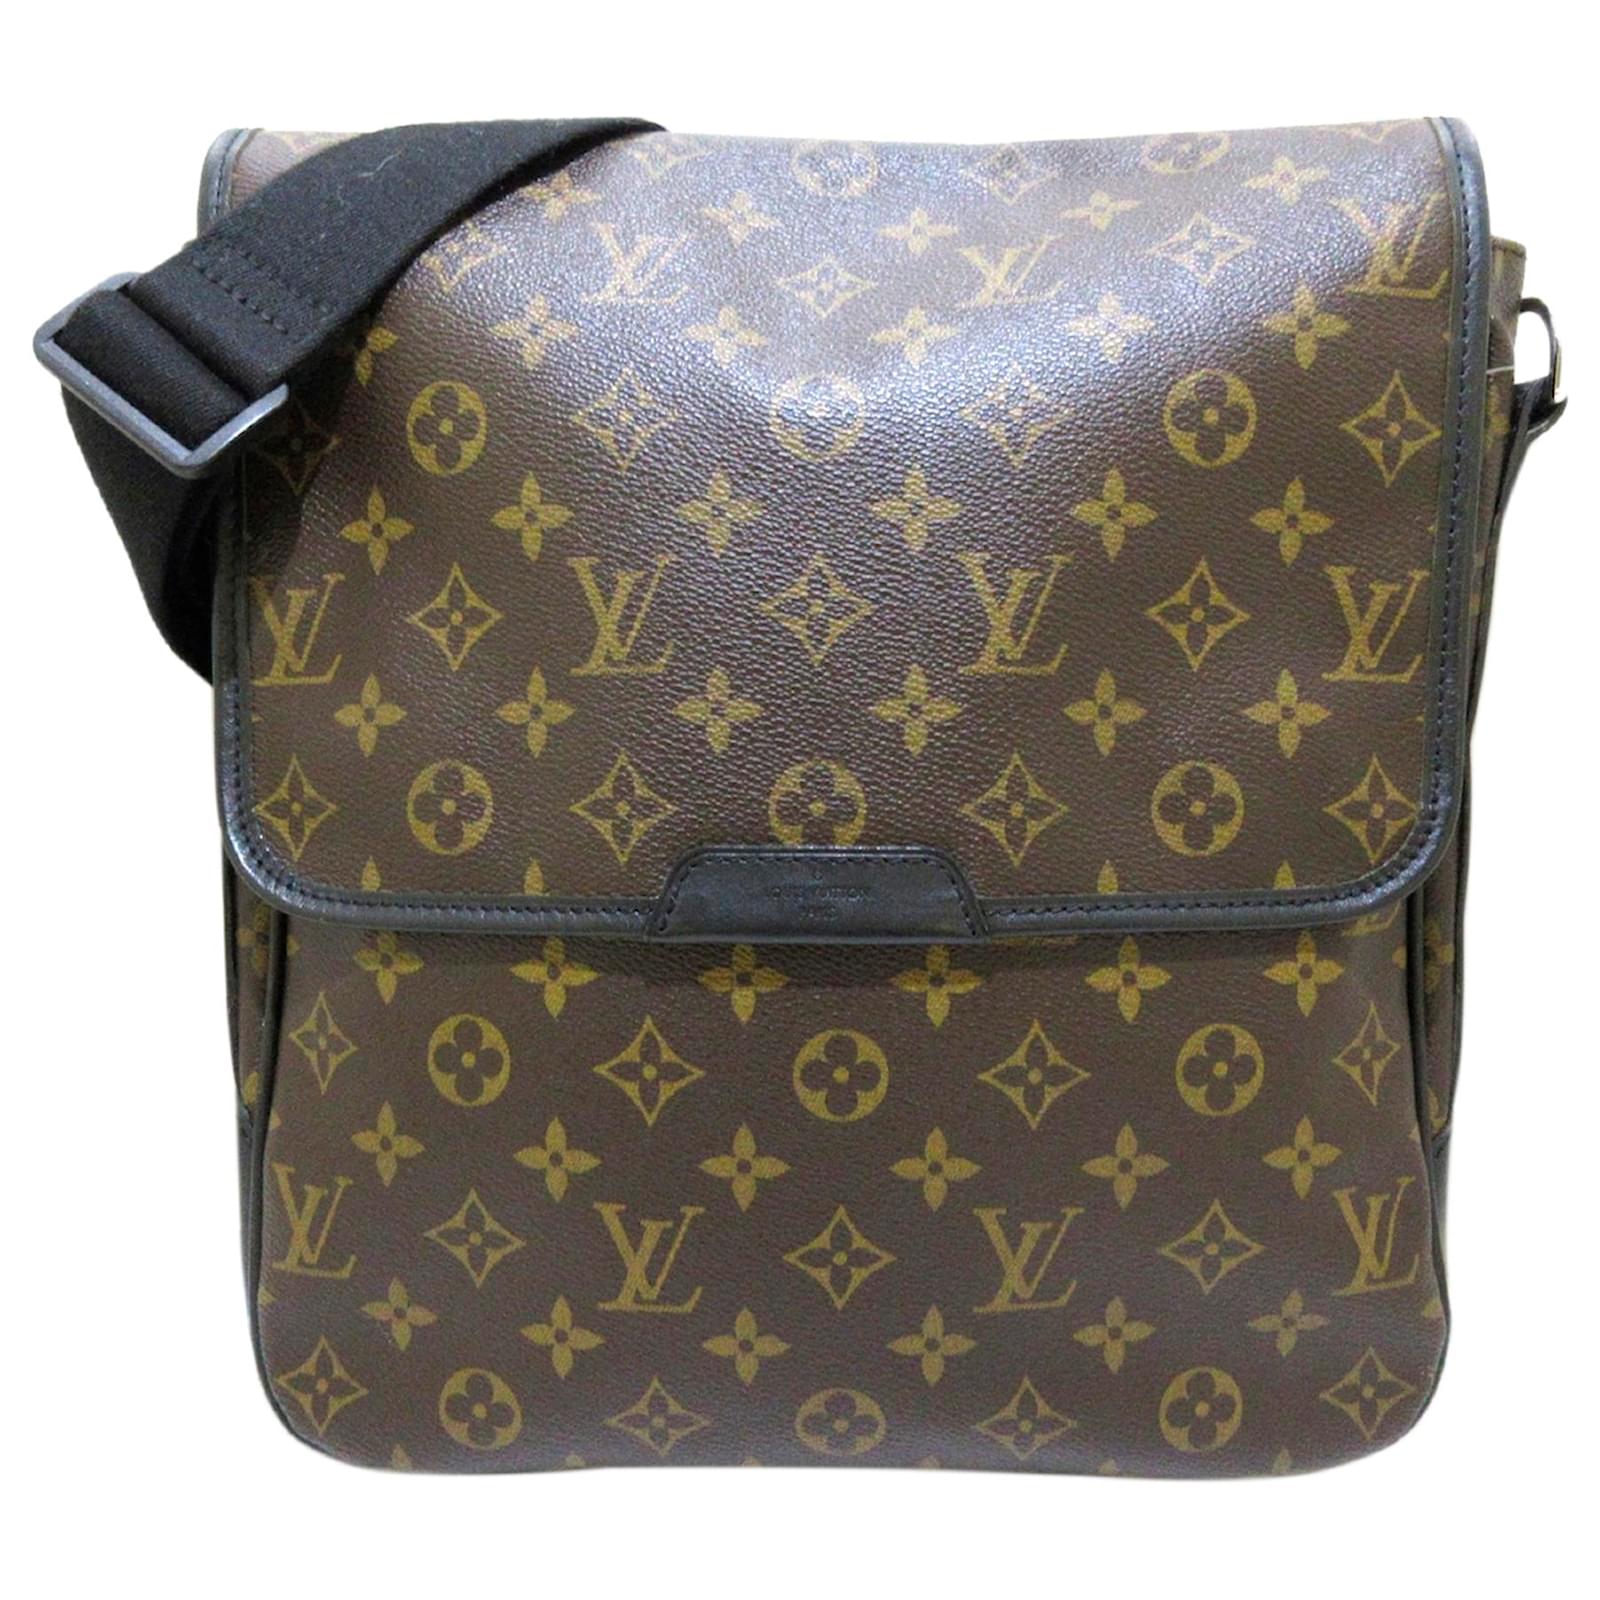 Louis Vuitton Monogram Macassar Canvas Bass MM Messenger Bag